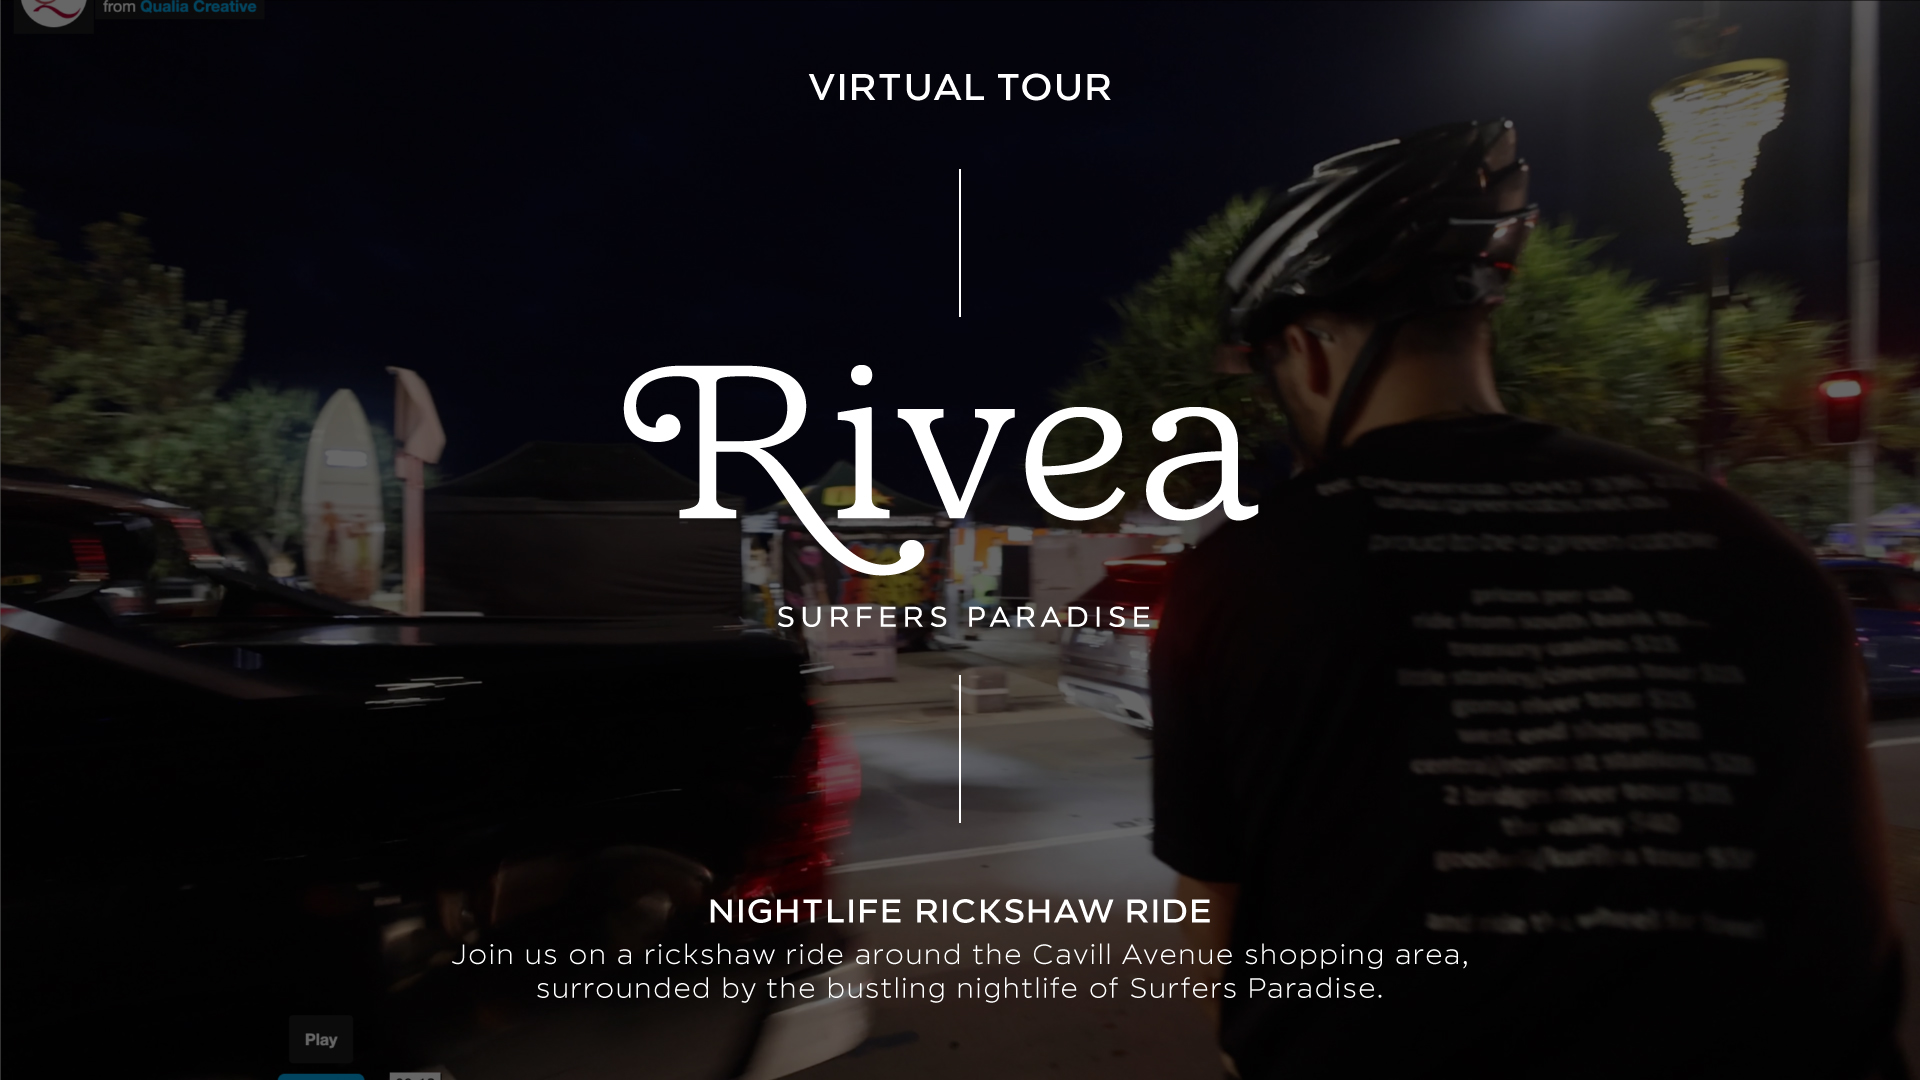 Night Rickshaw Ride